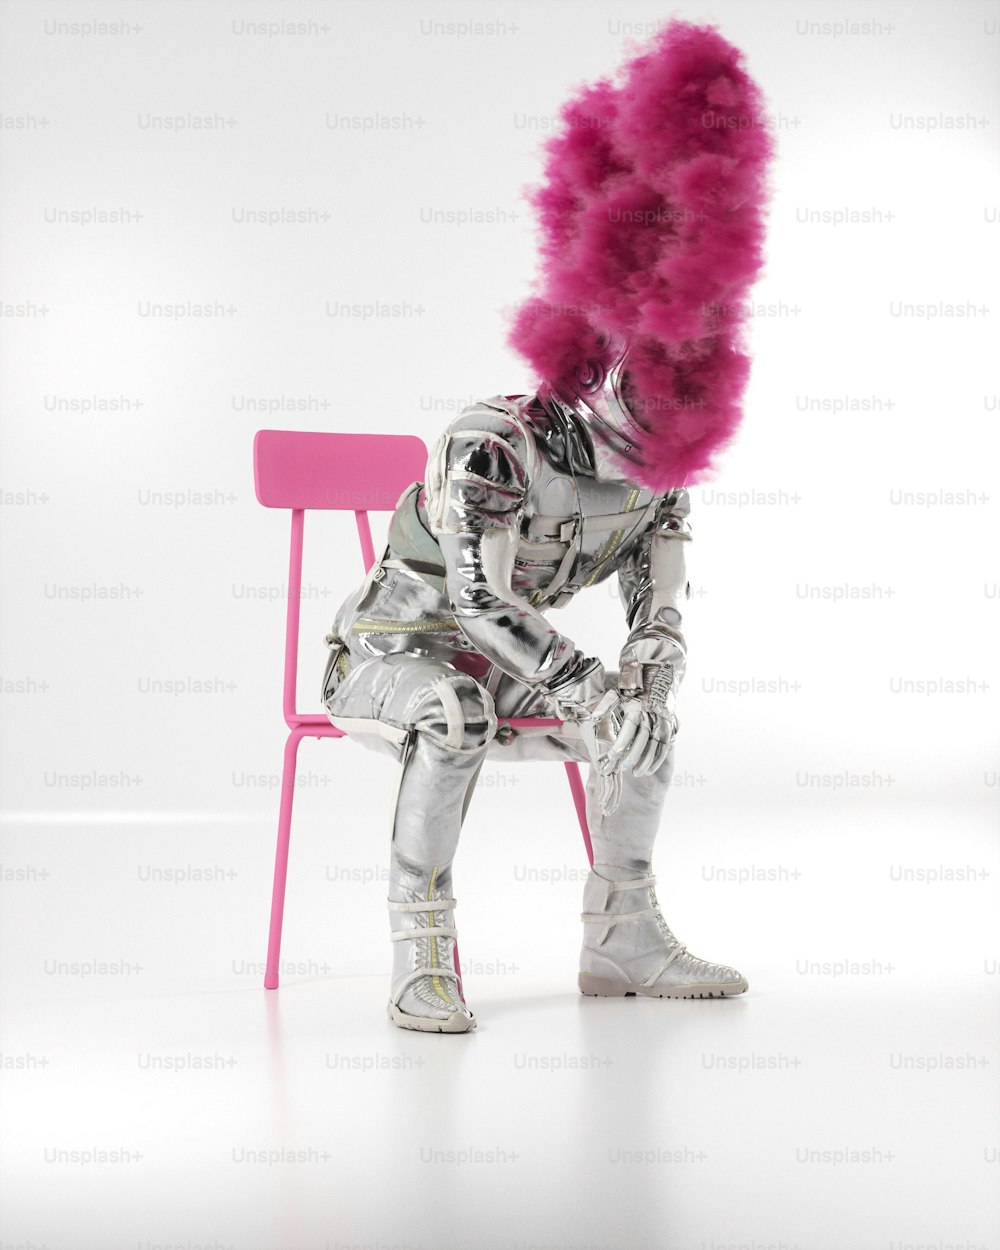 una persona seduta su una sedia rosa con i capelli rosa